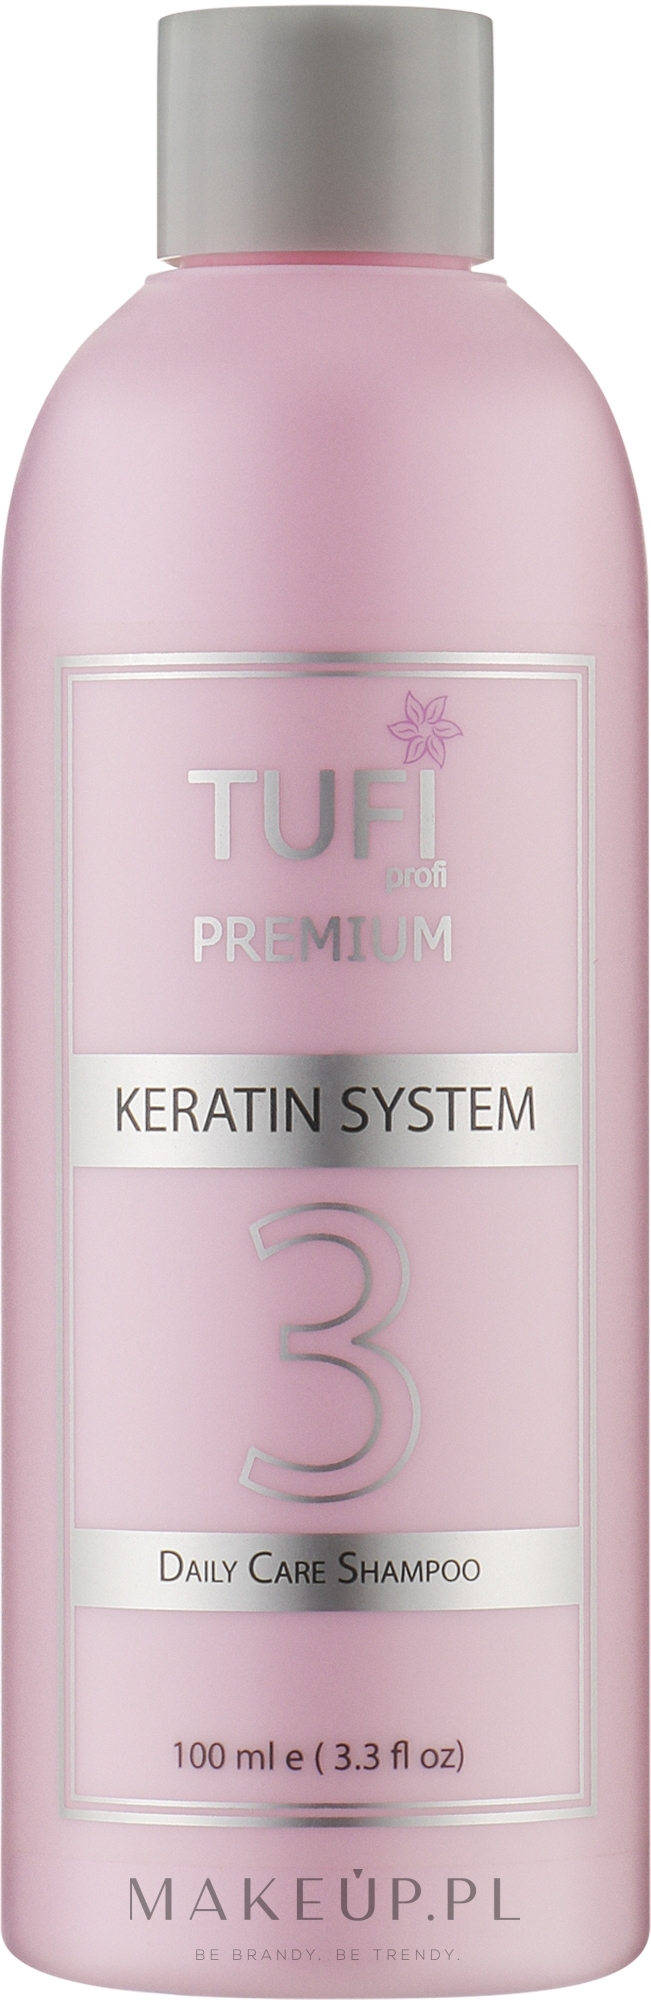 Bezsiarczanowy szampon do włosów - Tufi Profi Premium Daily Care Shampoo — Zdjęcie 100 ml